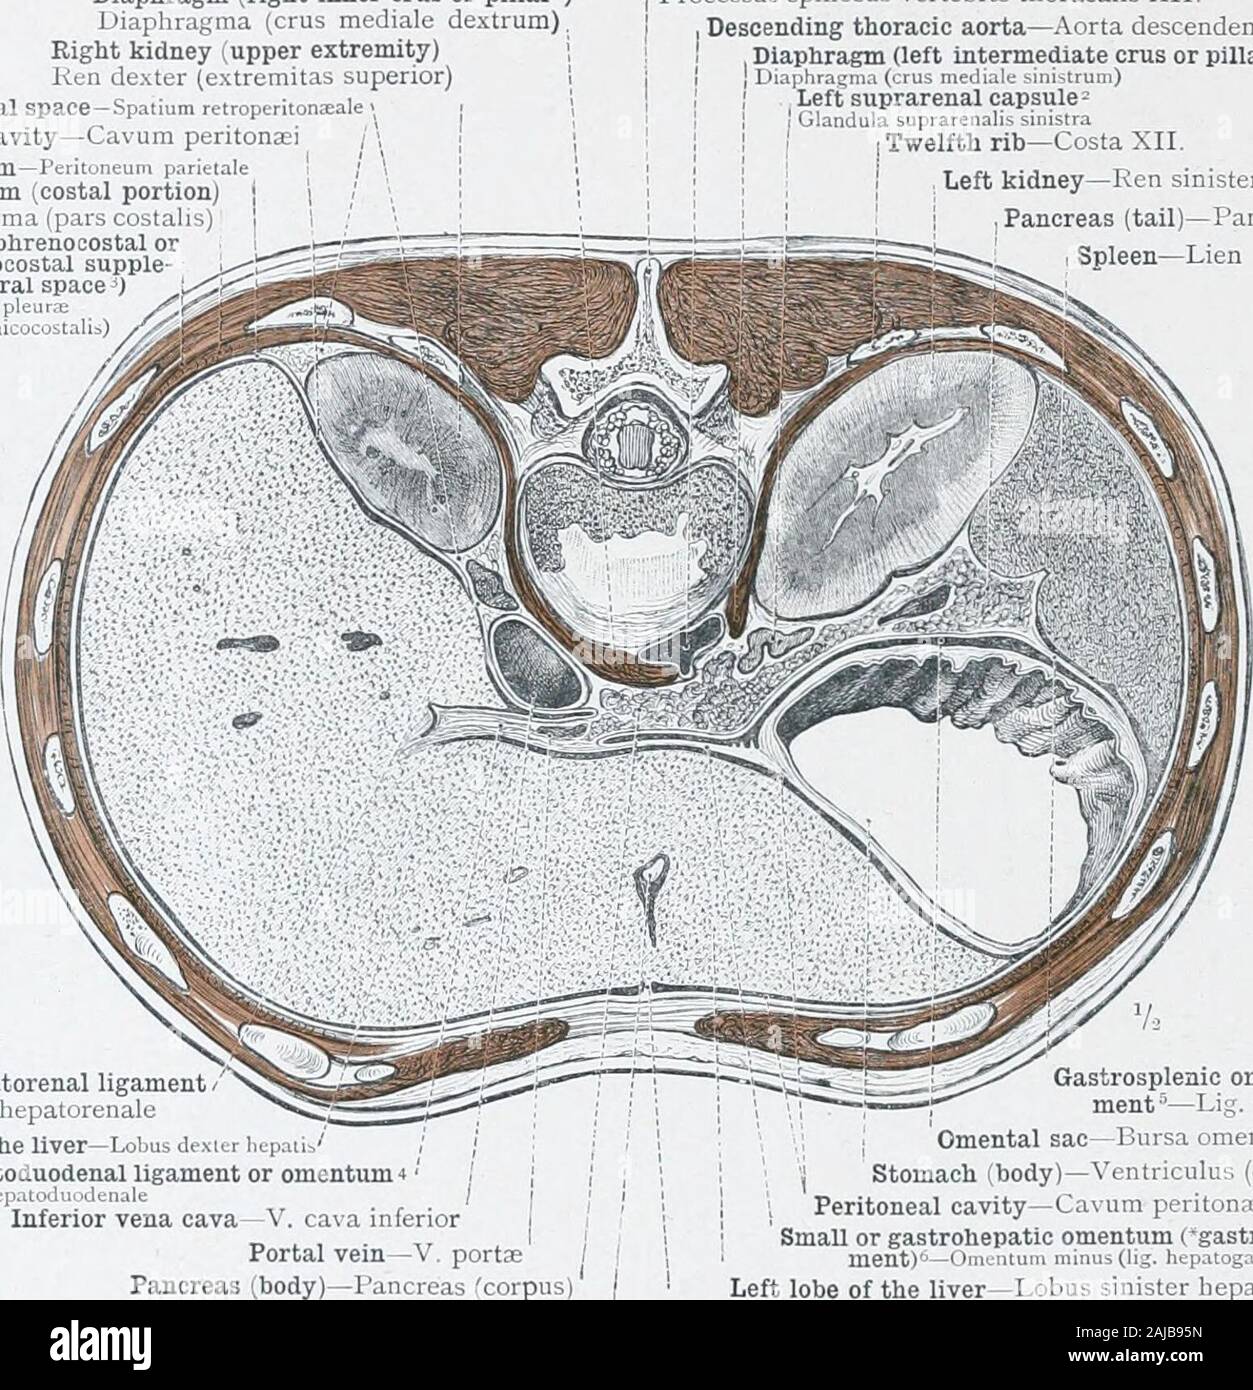 Un atlas de anatomía humana para estudiantes y médicos . S.VC. Anatomía topográfica de los órganos torácicos y de las vísceras en la parte superior de la cavidad abdominal. 480 anatomía topográfica de las vísceras torácicas y abdominales (diafragma cru o pilar interior derecha)diafragmática (cru mediale dextrum)El riñón derecho (la extremidad superior)Ken dexter (extremitas superior)espacio retroperitoneal -Spatium retroperitoneal de cavidad peritoneal-Cavum peritonaei peritonseum -peritoneo pariet parietal. Diafragma (porción costal) (pars costalis diafragmática)Cavidad pleural (phrenocostal ordiaphragmaticocostal flexible Foto de stock